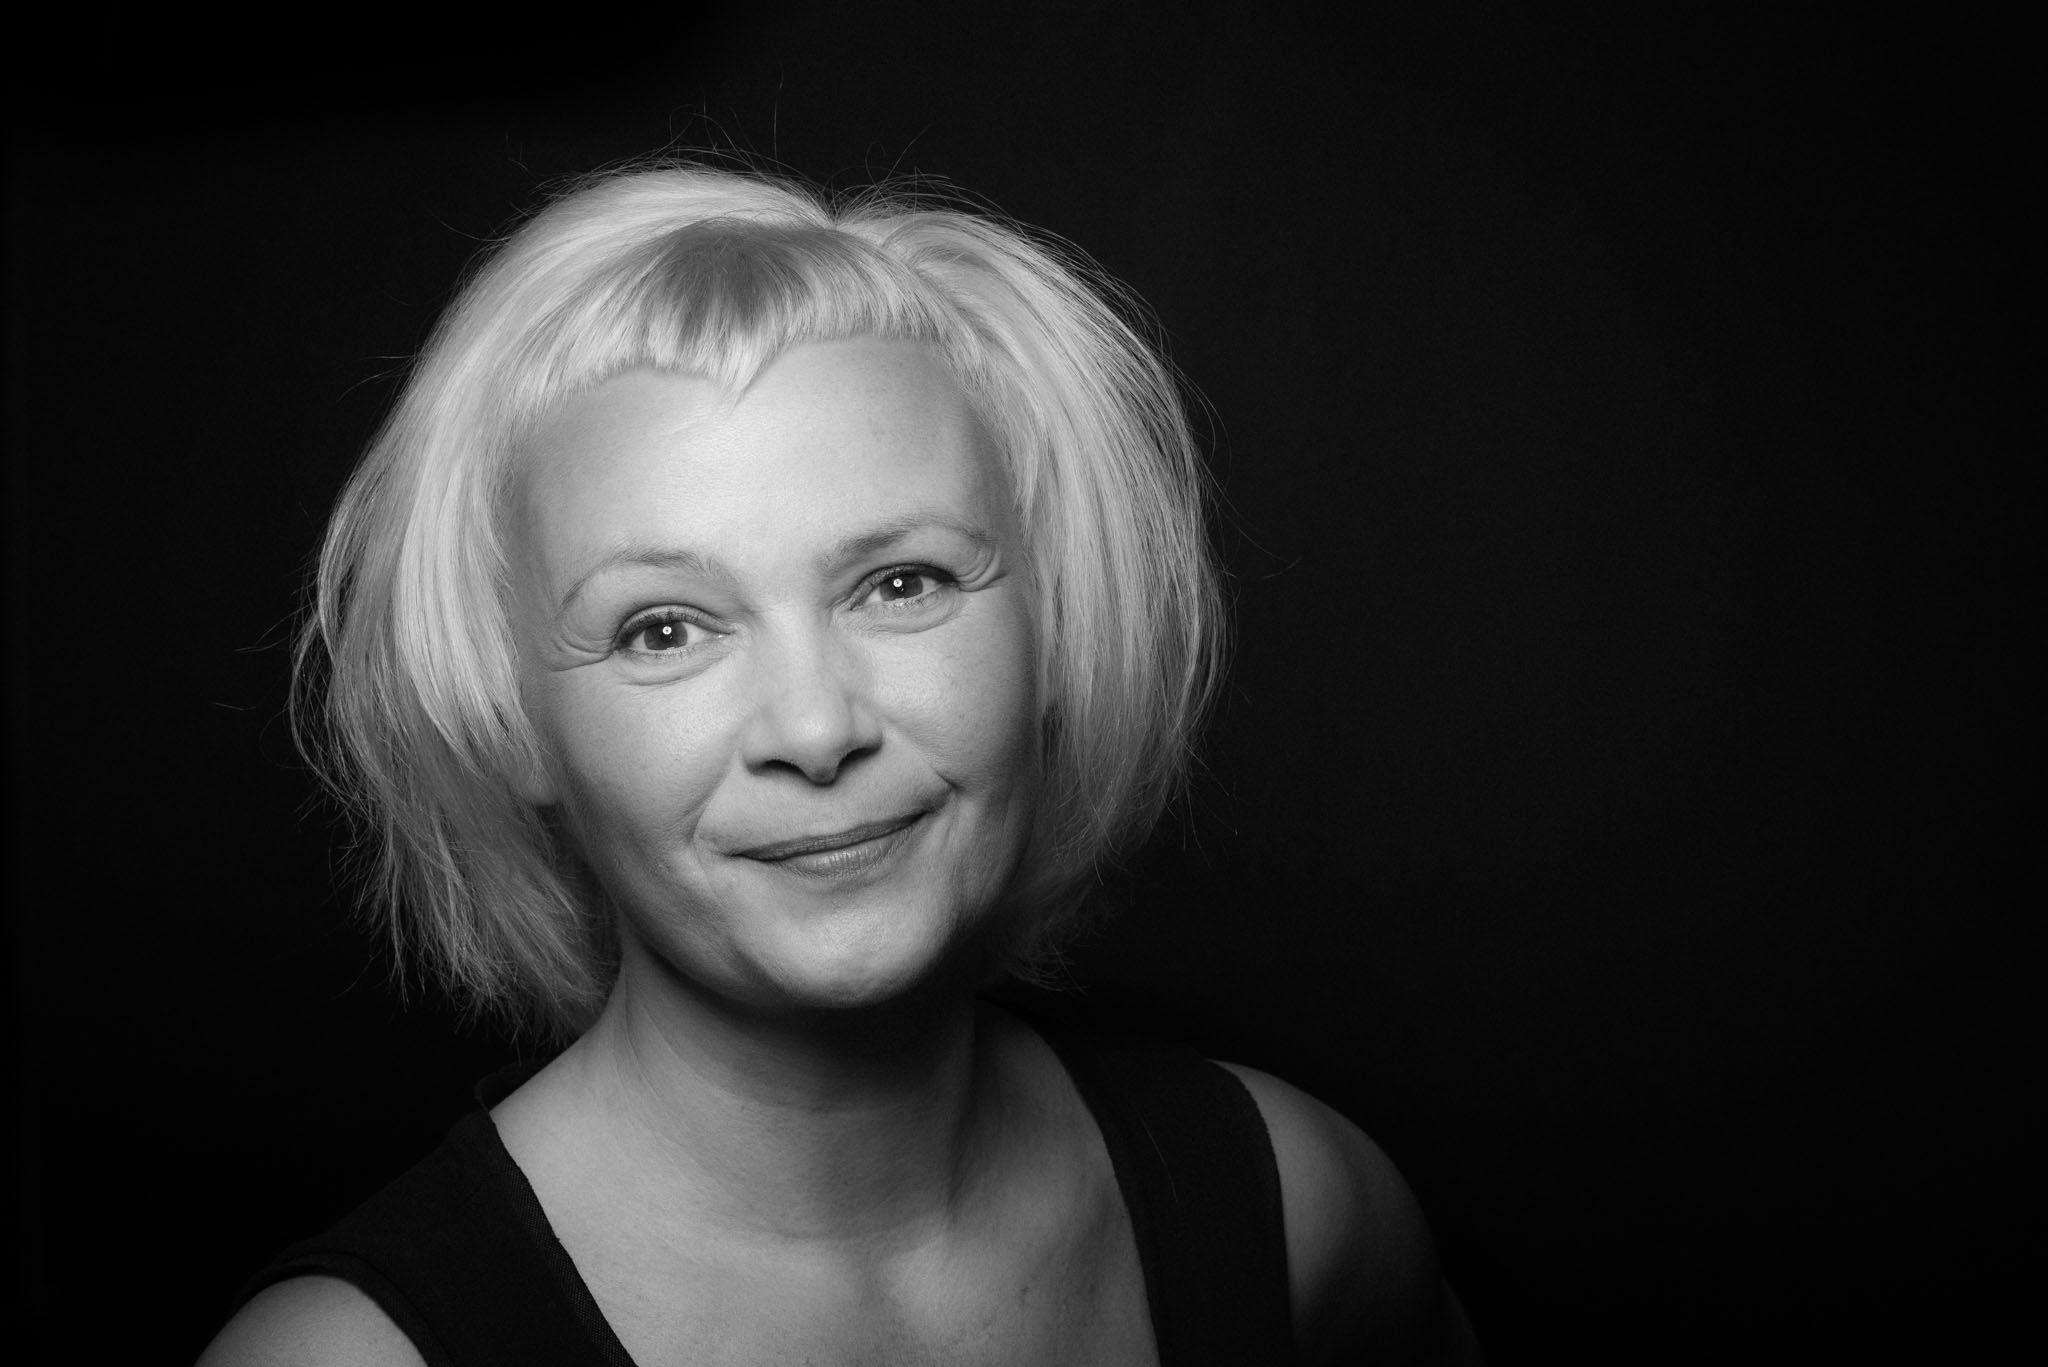 Portraitaufnahme einer Frau mit weißem Bubikopf. In schwarzweiß wirkt die Aufnahme sehr kontrastreich. Sie schaut freundlich, mit einem leichten Lächeln in die Kamera.